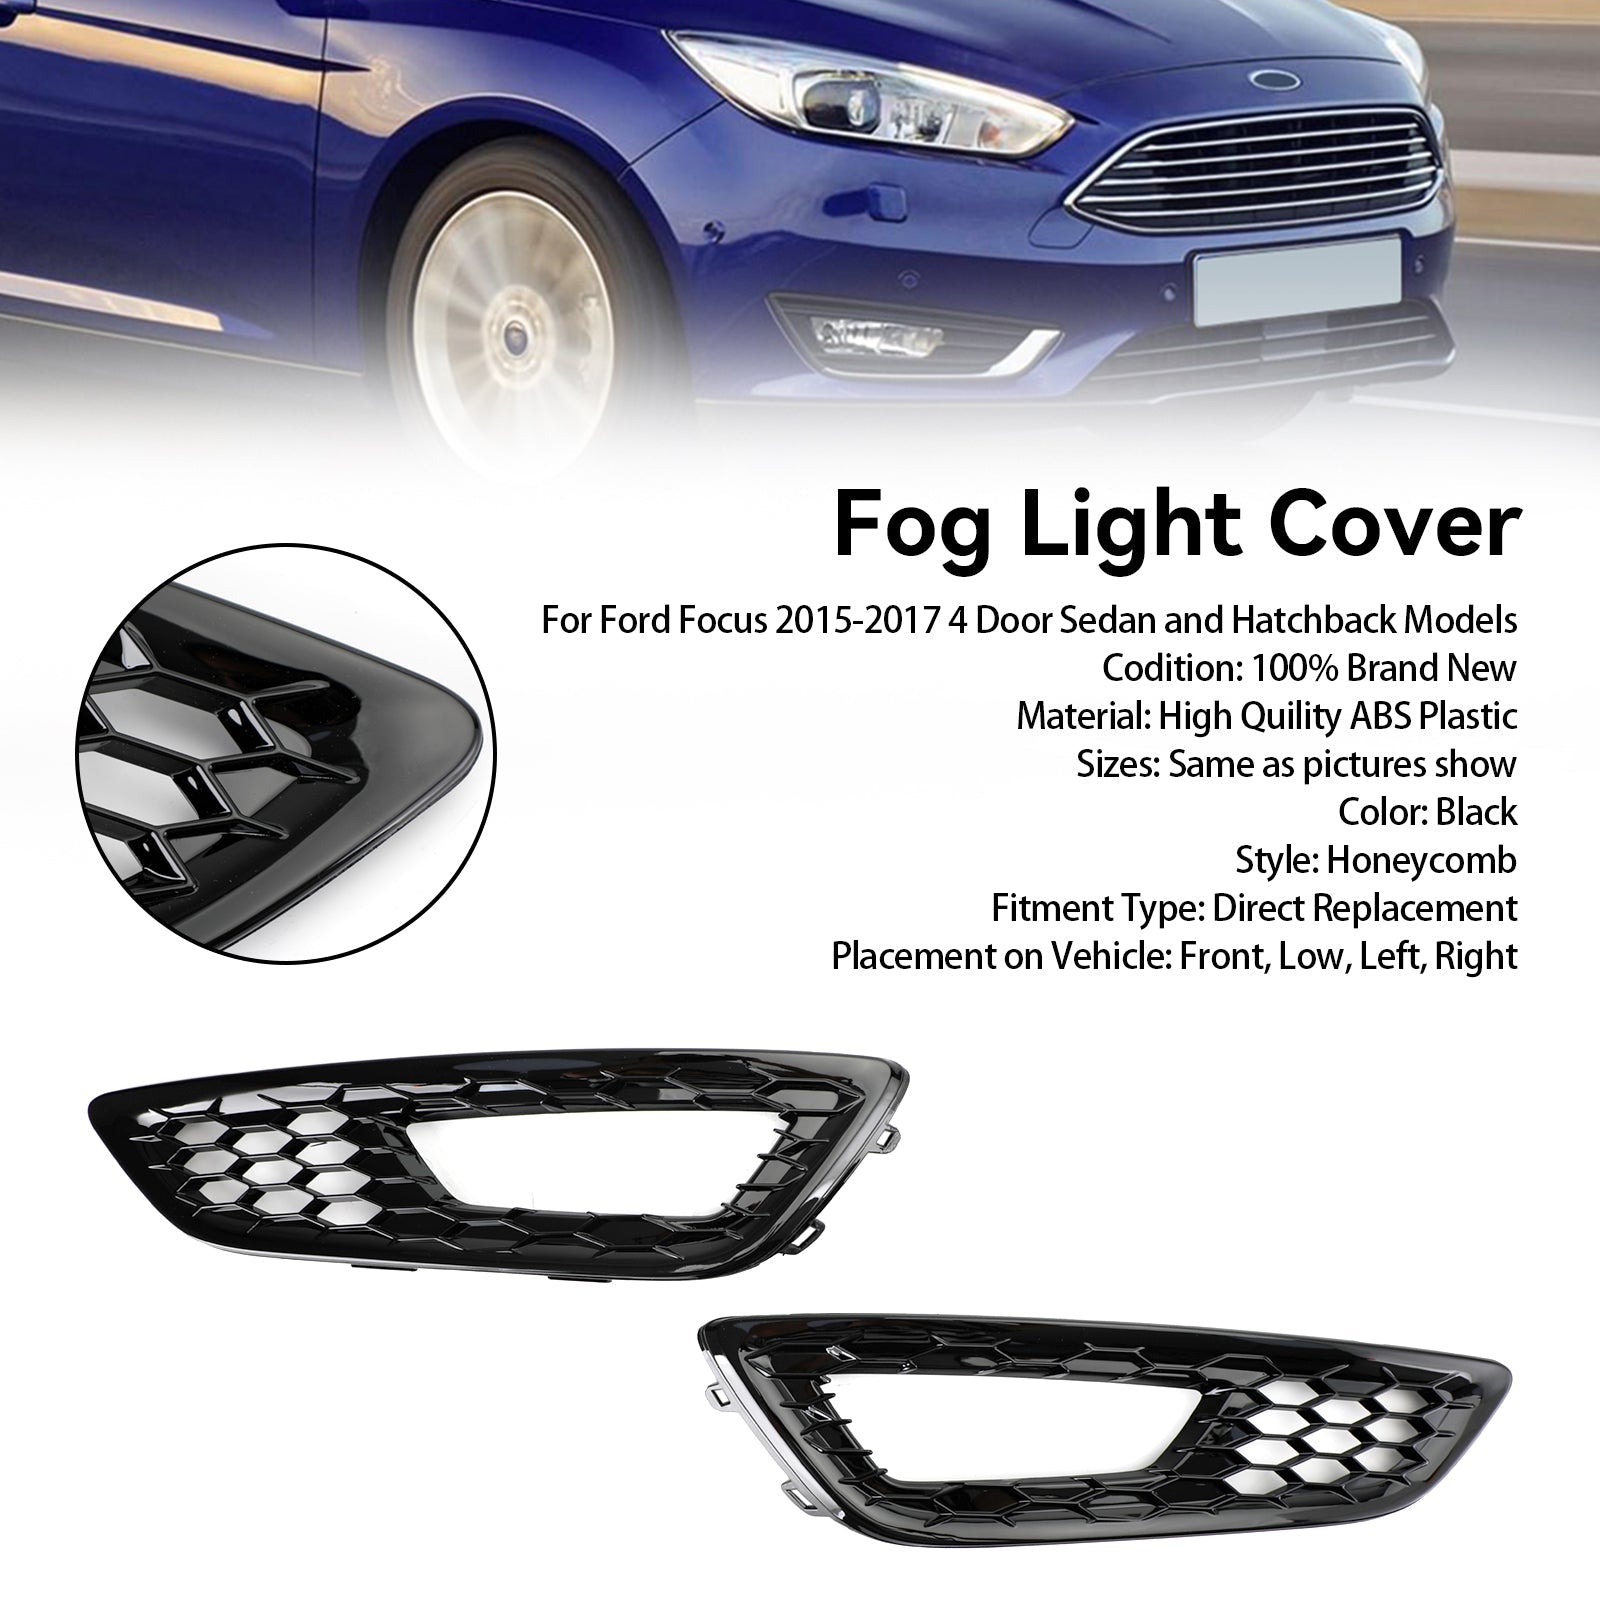 Ford Focus 2015-2017 paire de pare-chocs avant antibrouillard couvercle de lampe lunette grille